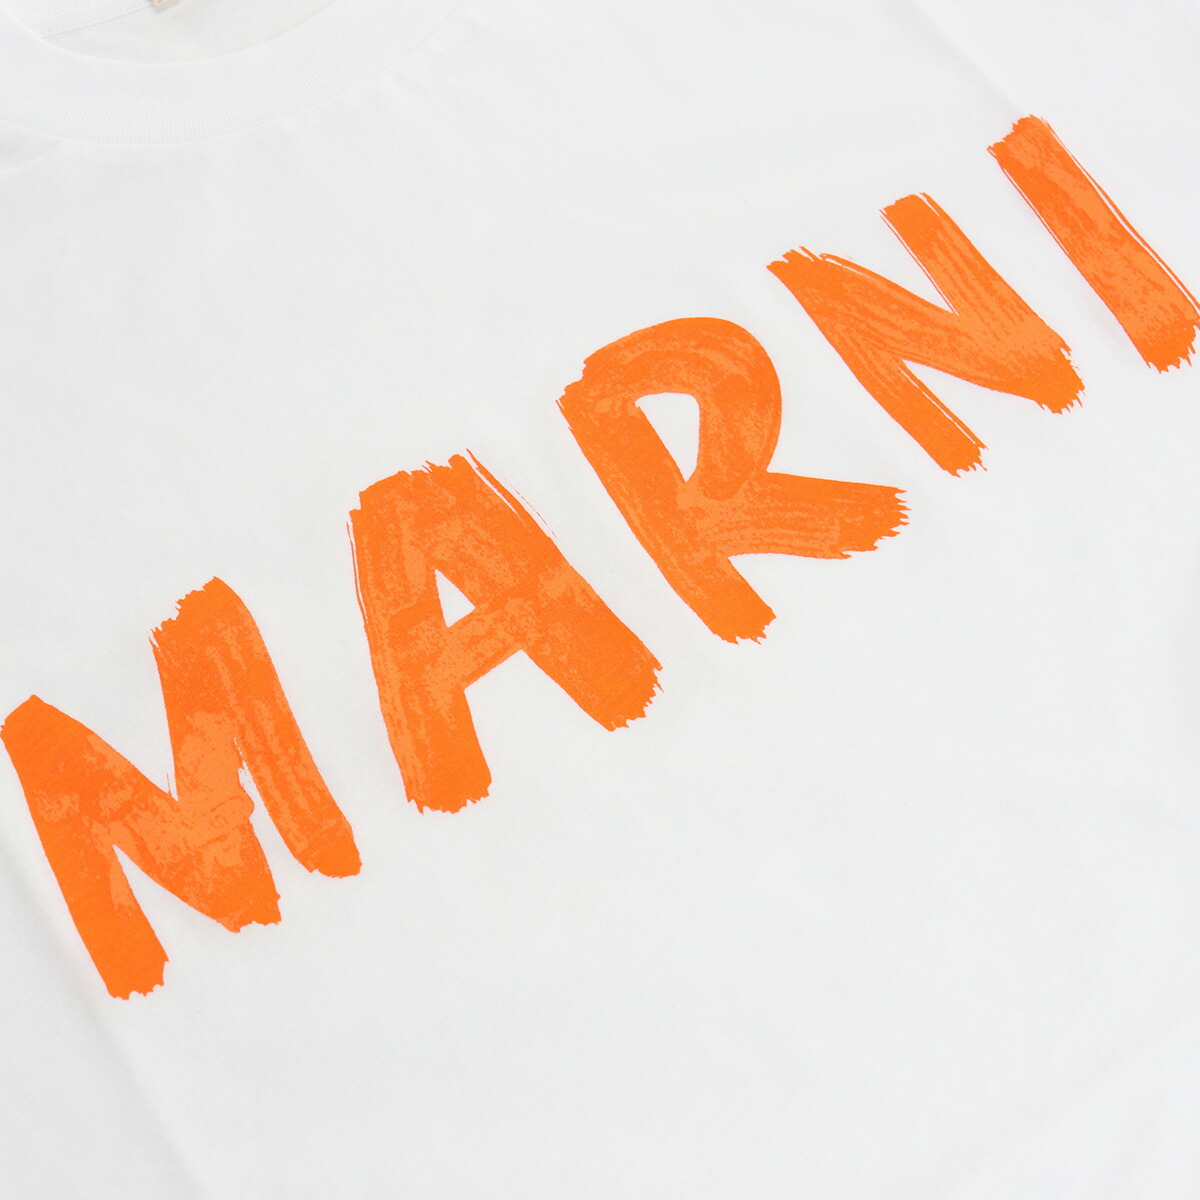 MARNI マルニ THJET49EPF Tシャツ レッド系 レディース